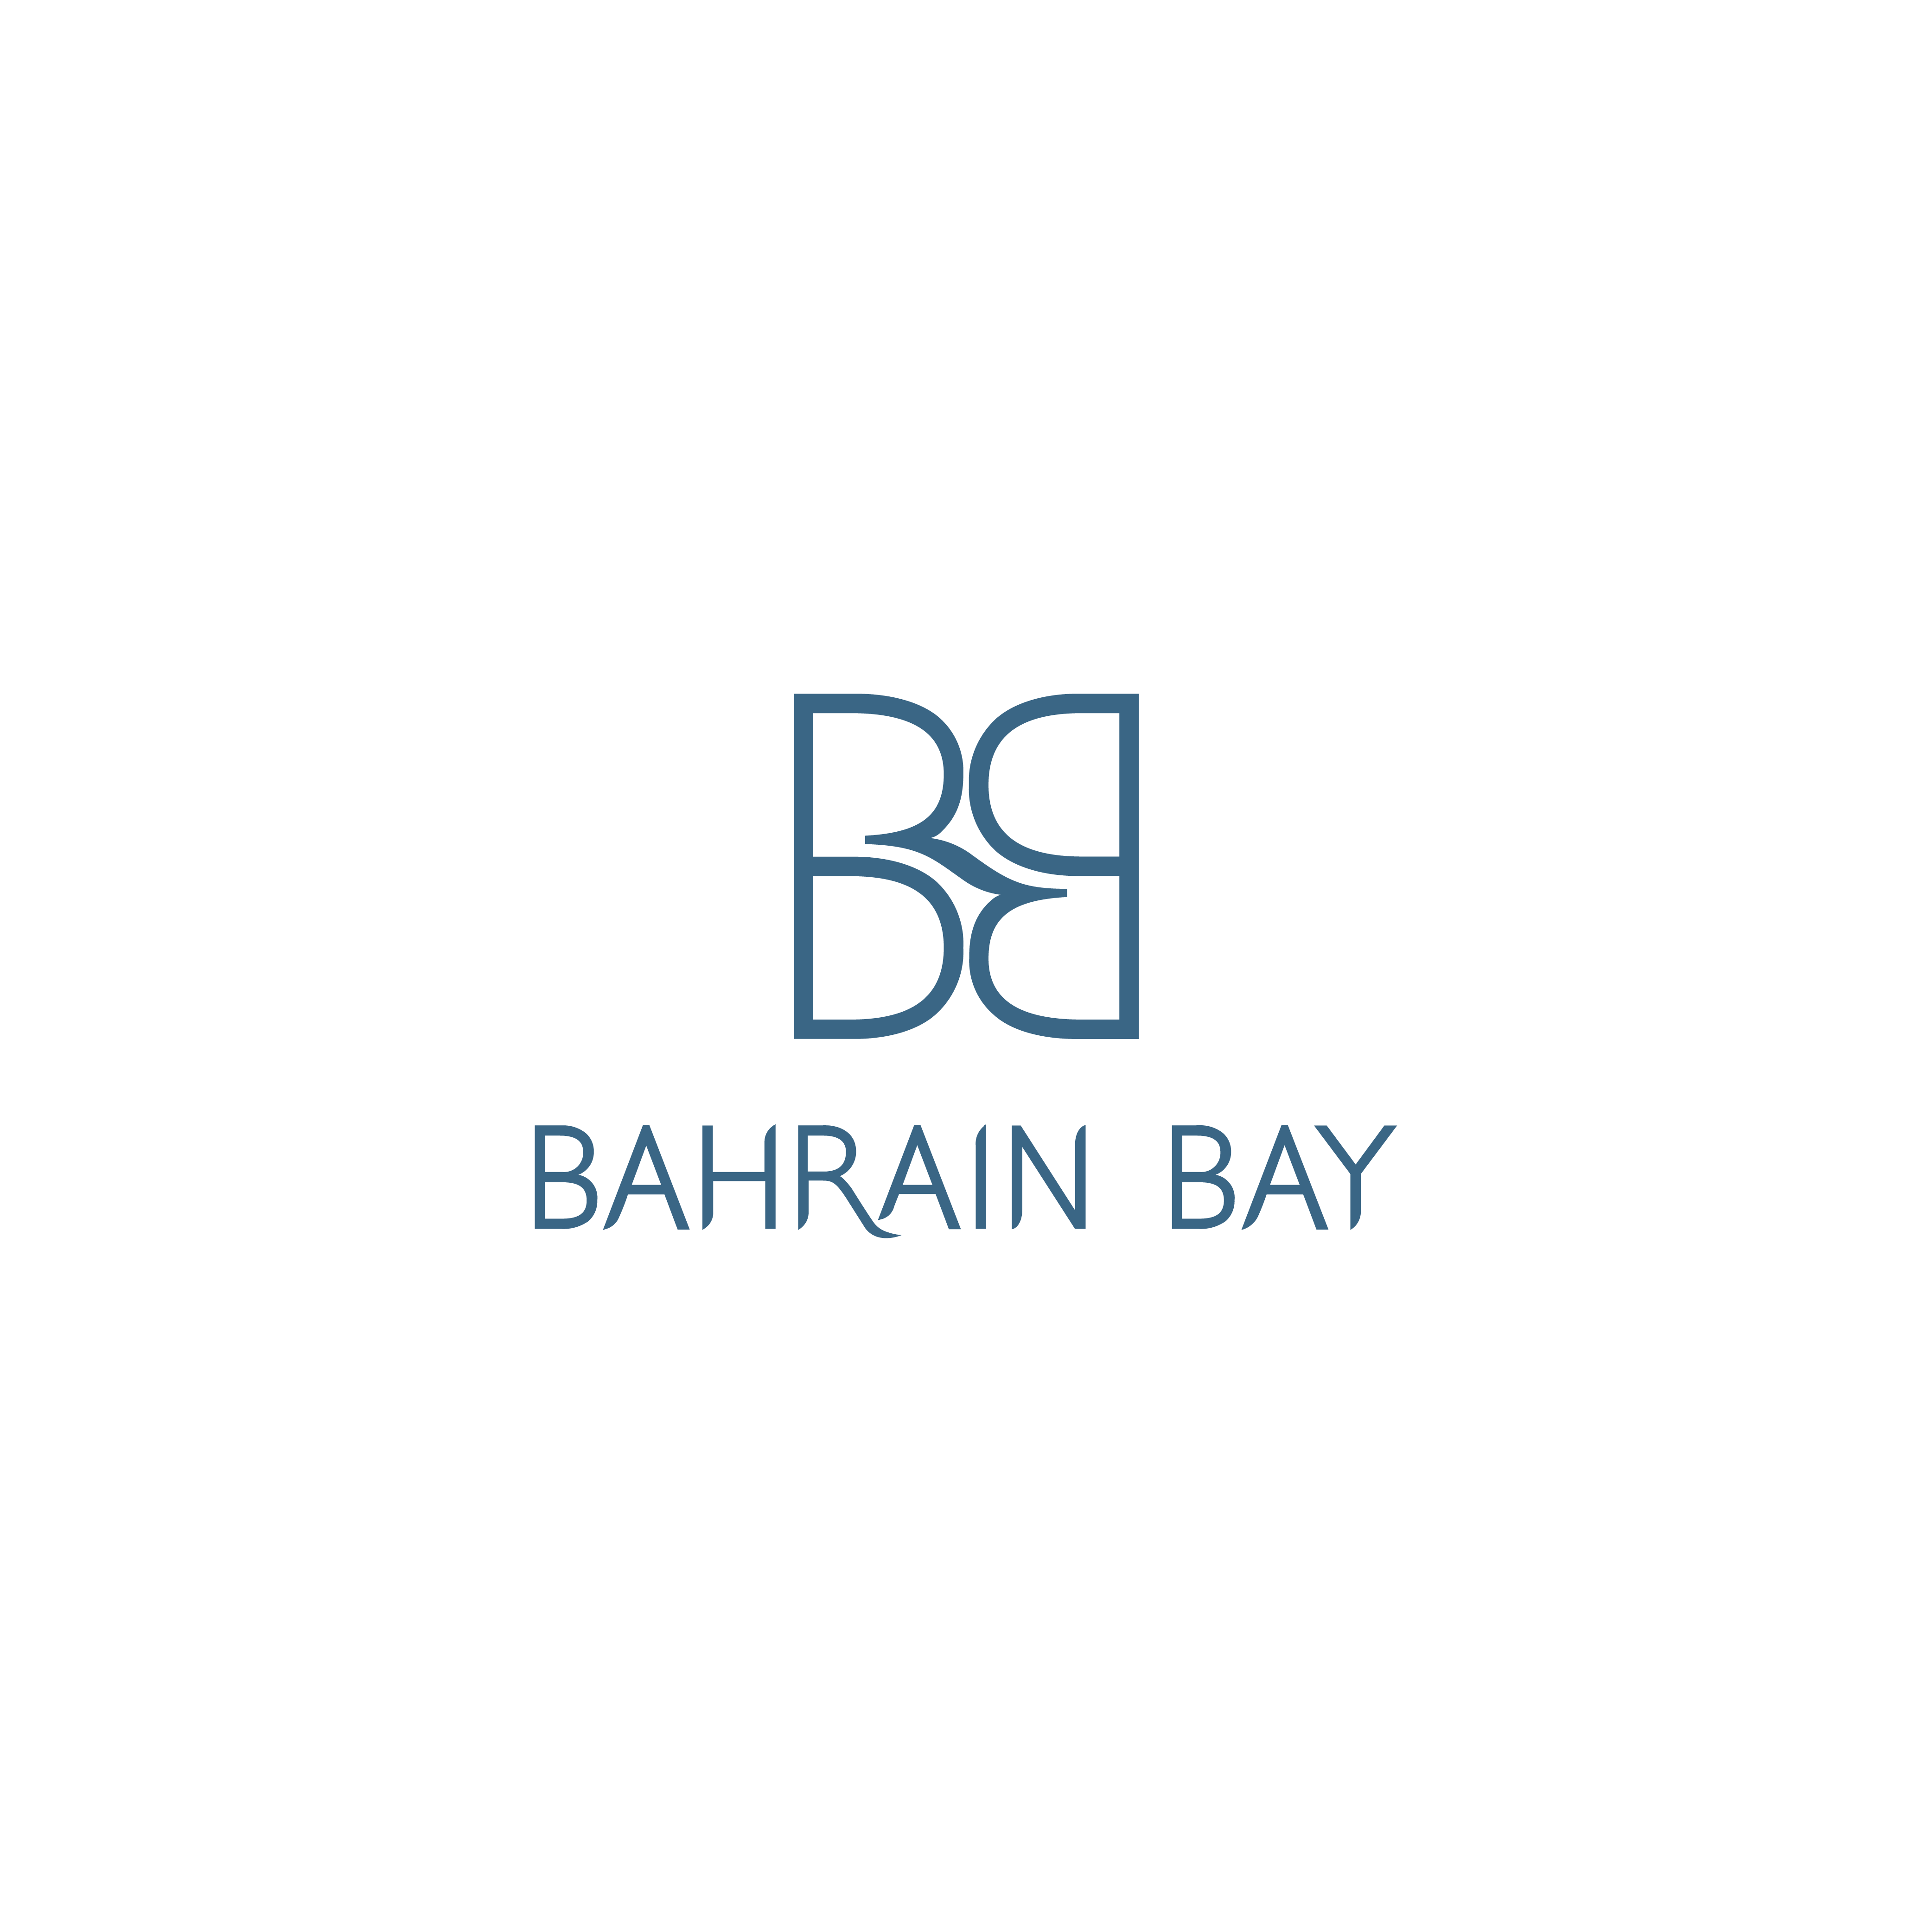 logos_bahrain bay